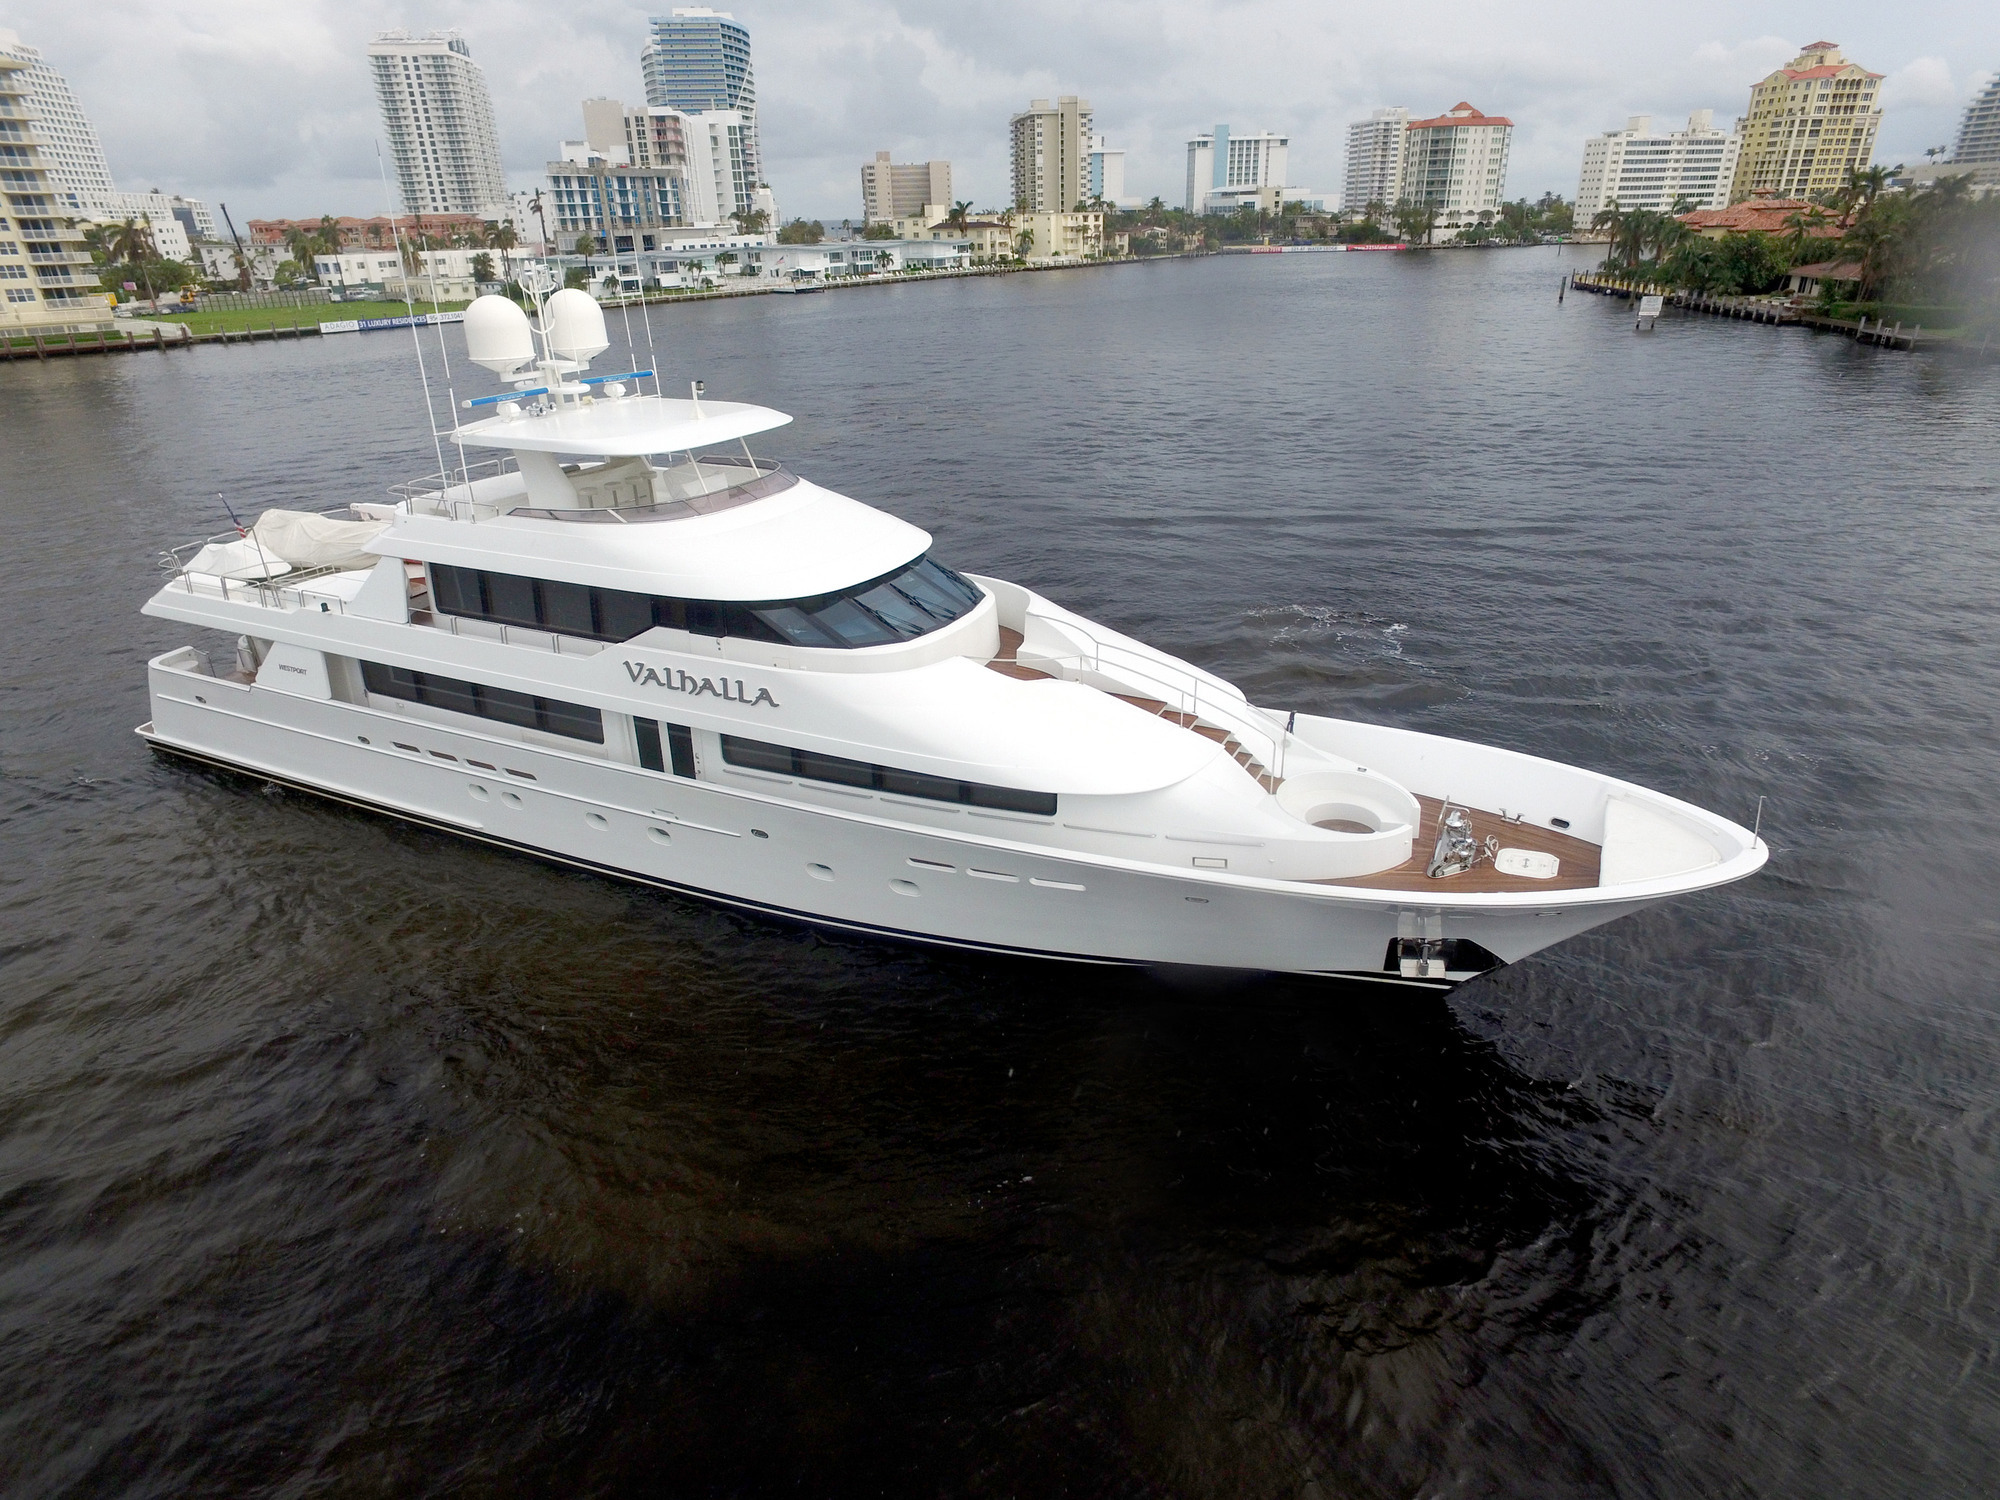 39m Westport yacht VALHALLA - Main shot